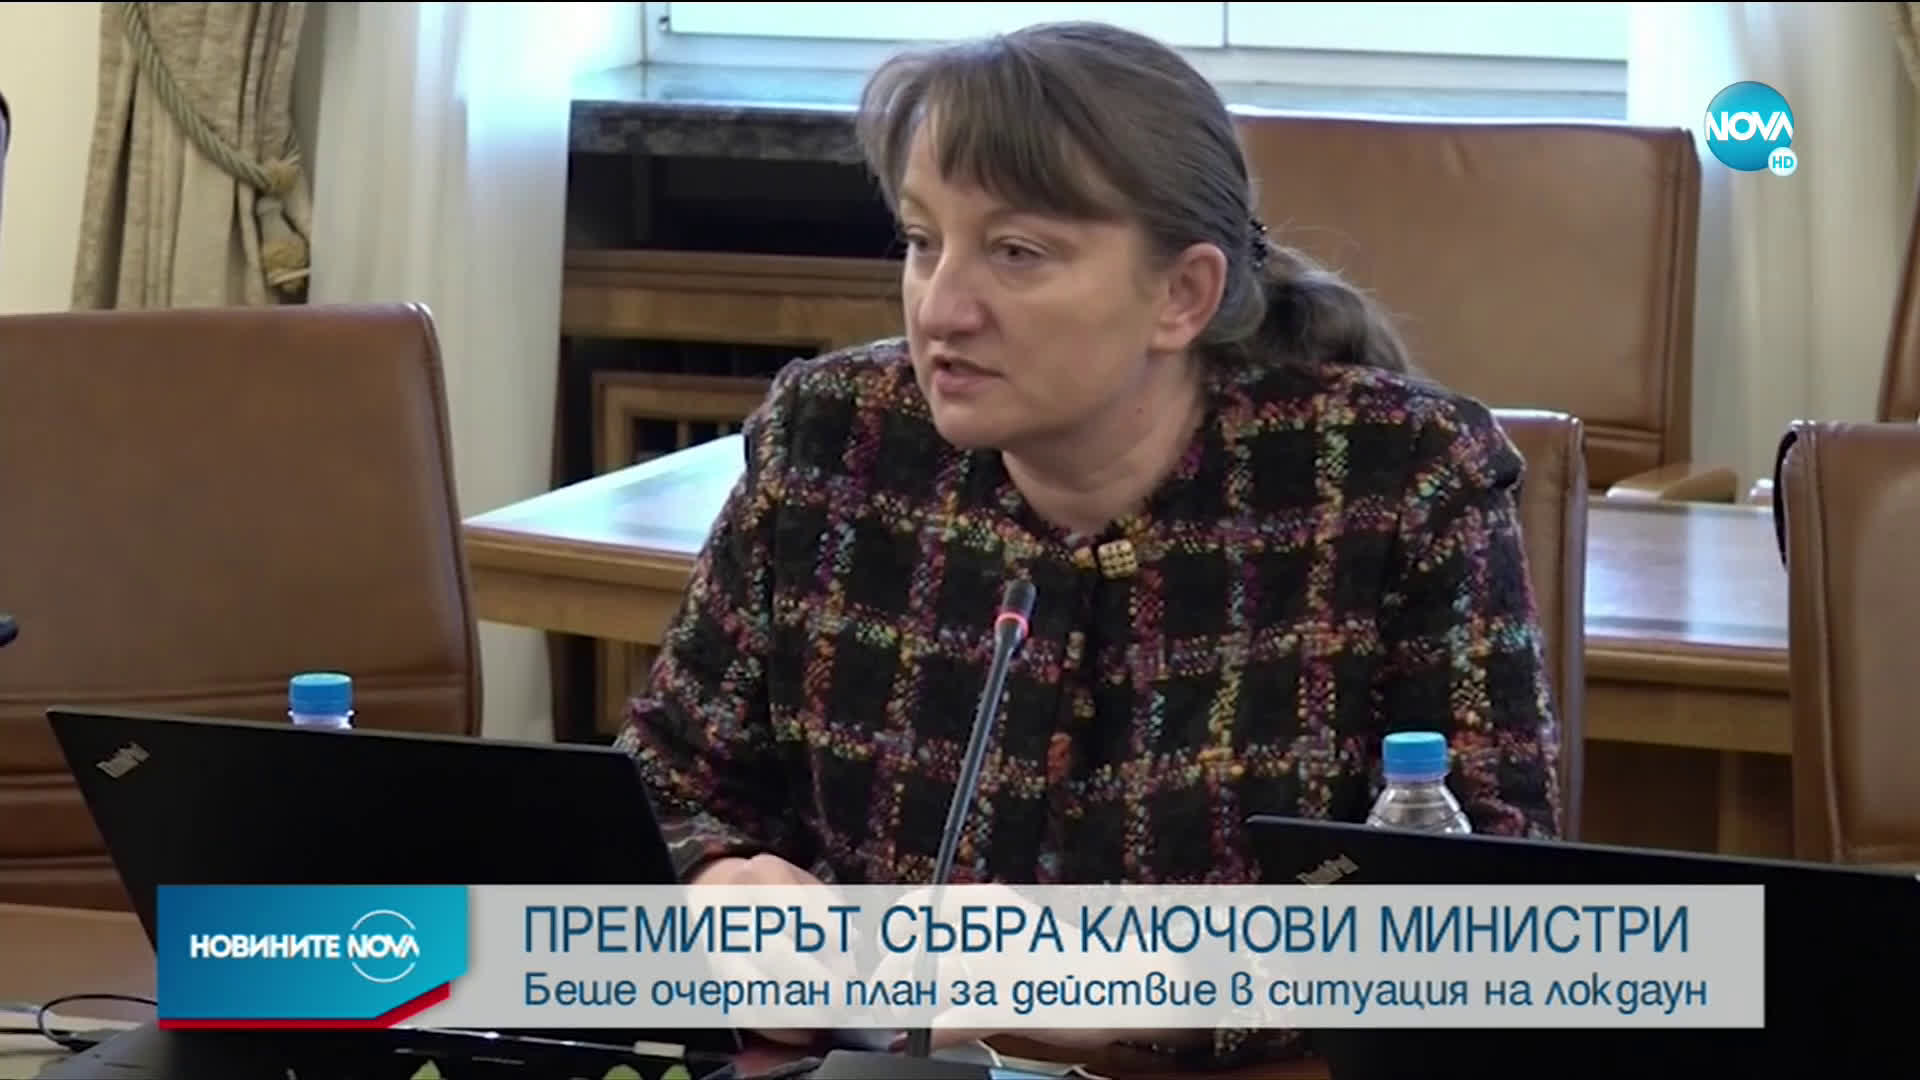 Борисов: Важно е броят на излекуваните да расте и бизнесът да работи